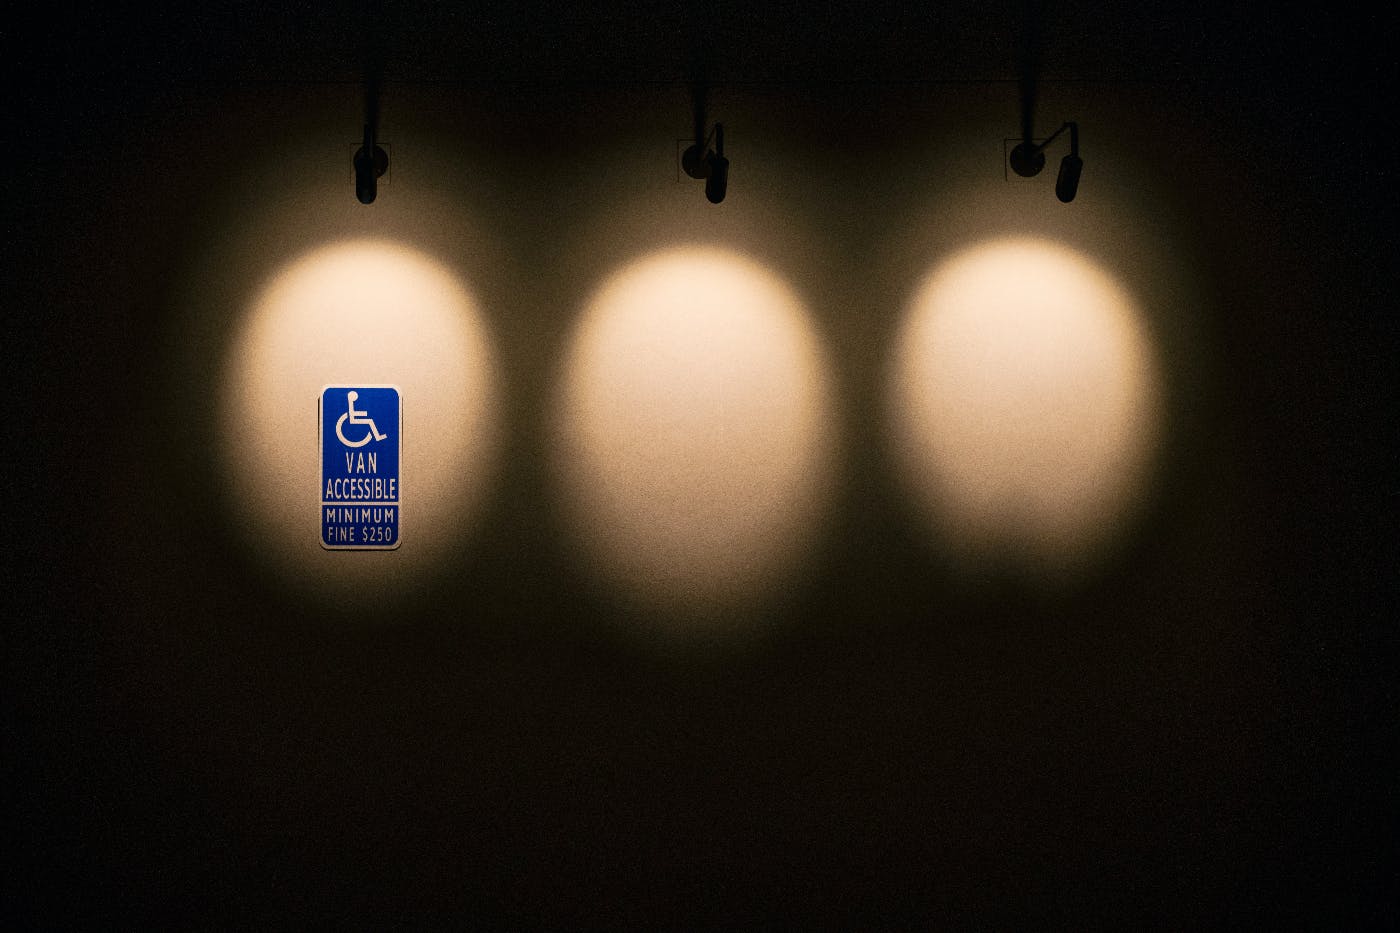 3 spot lights on a black wall, the first illuminates a handicap sign